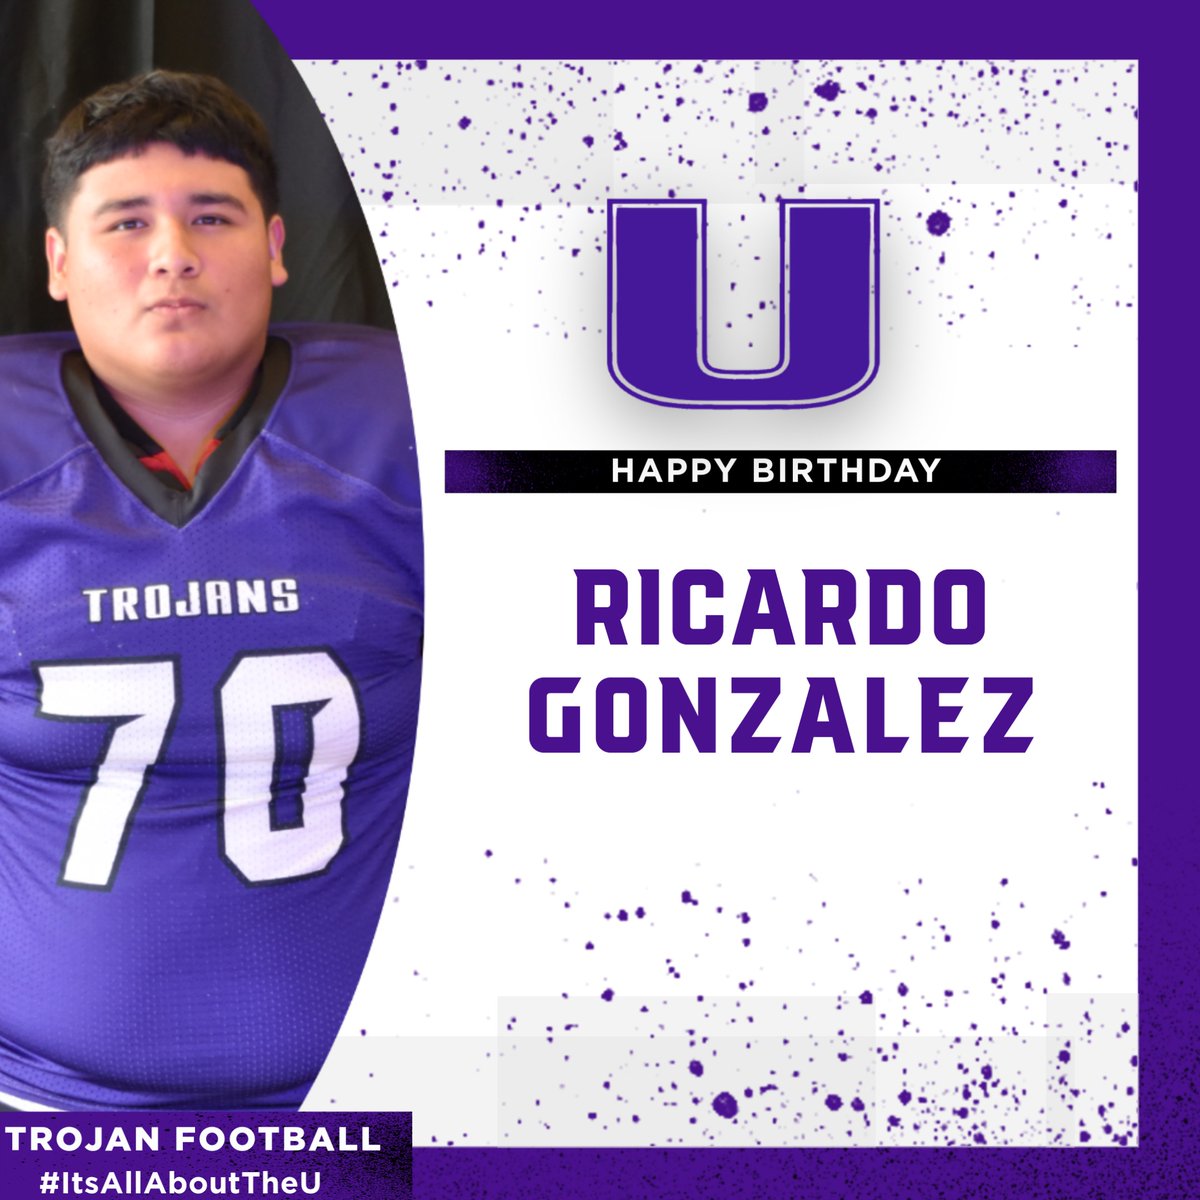 Happy Birthday to Ricardo Gonzalez!